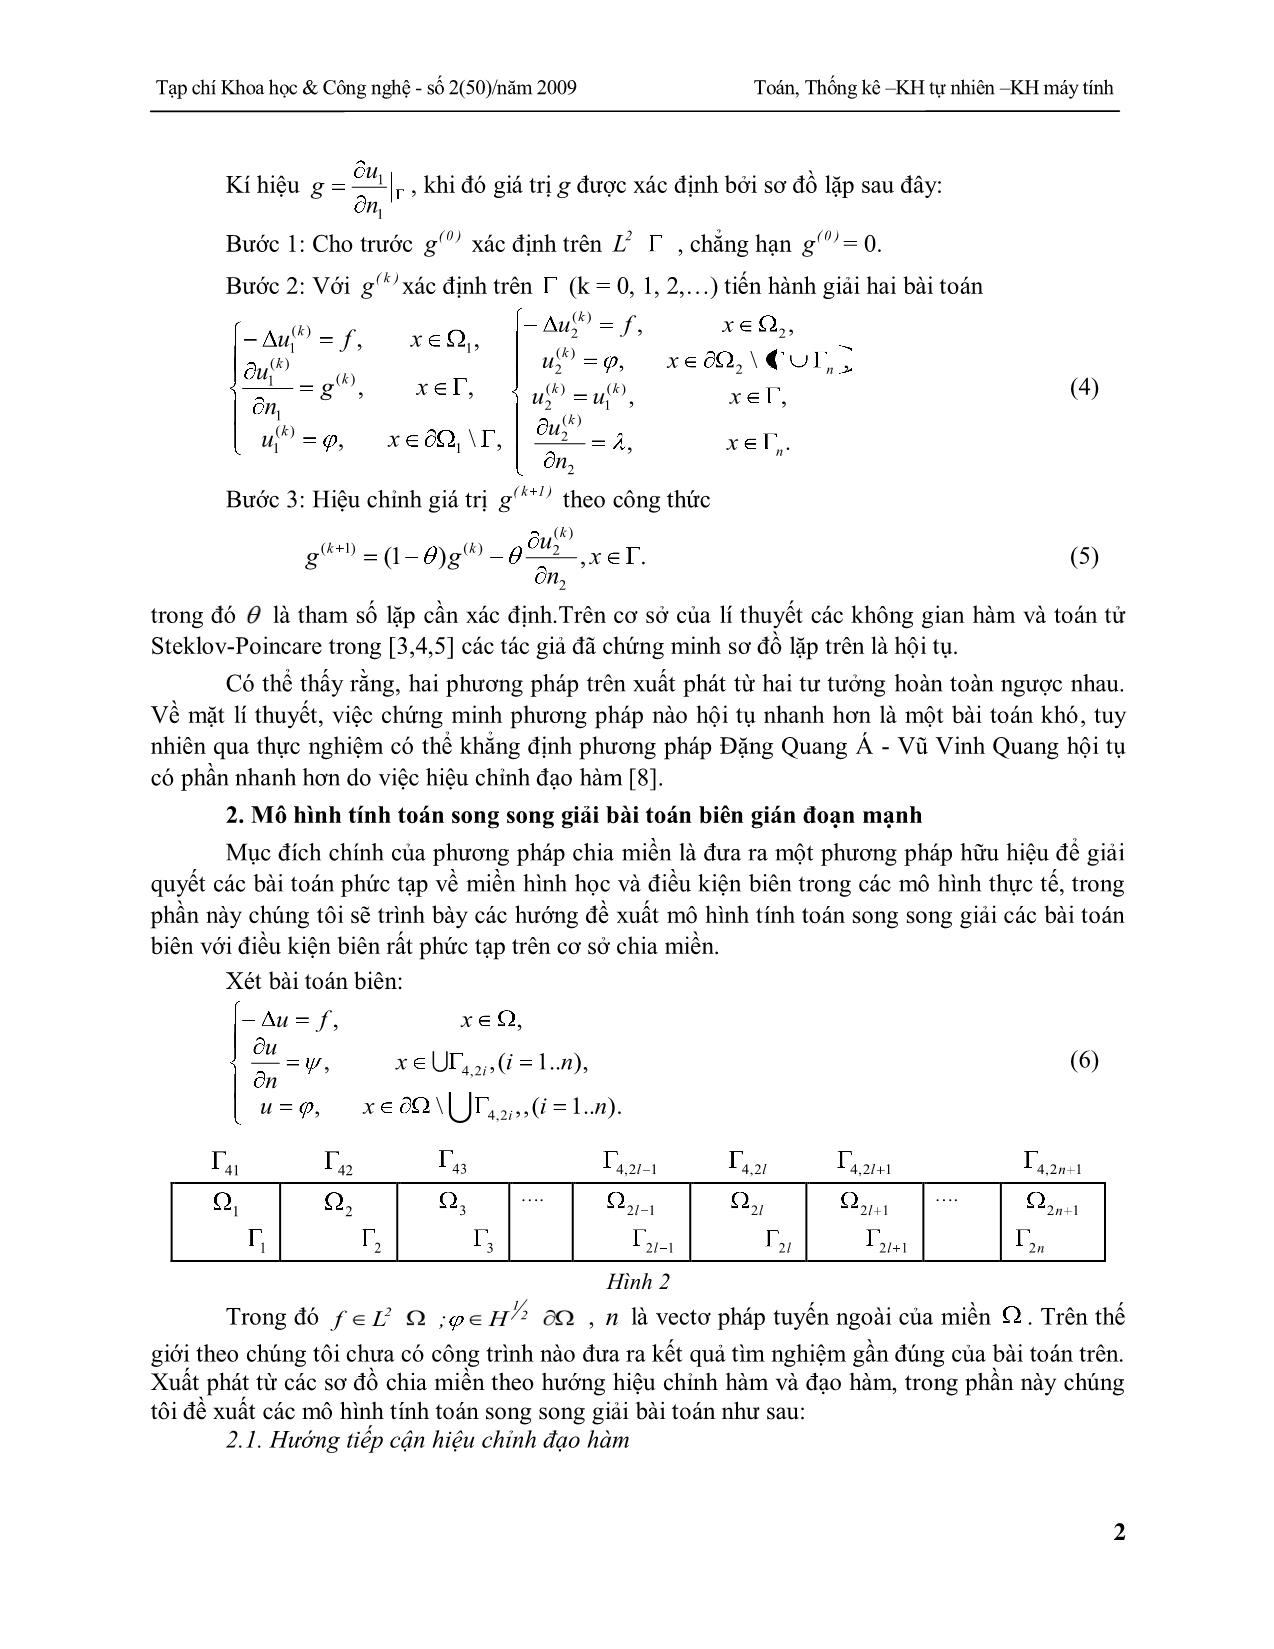 Mô hình tính toán song song giải bài toán biên hỗn hợp mạnh dựa trên chia miền trang 2